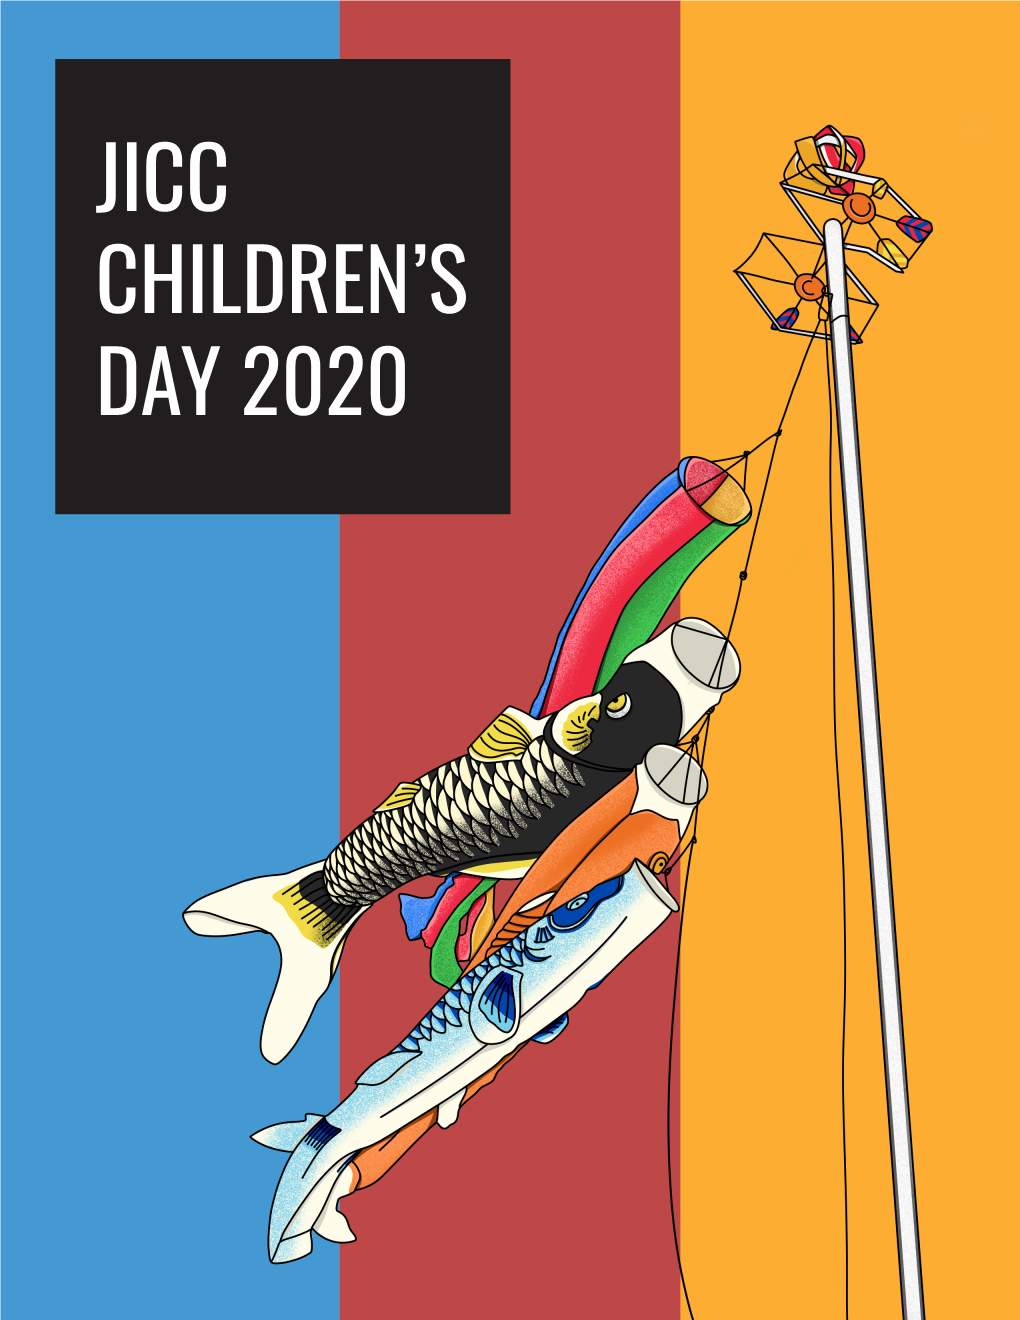 Jicc Children's Day 2020